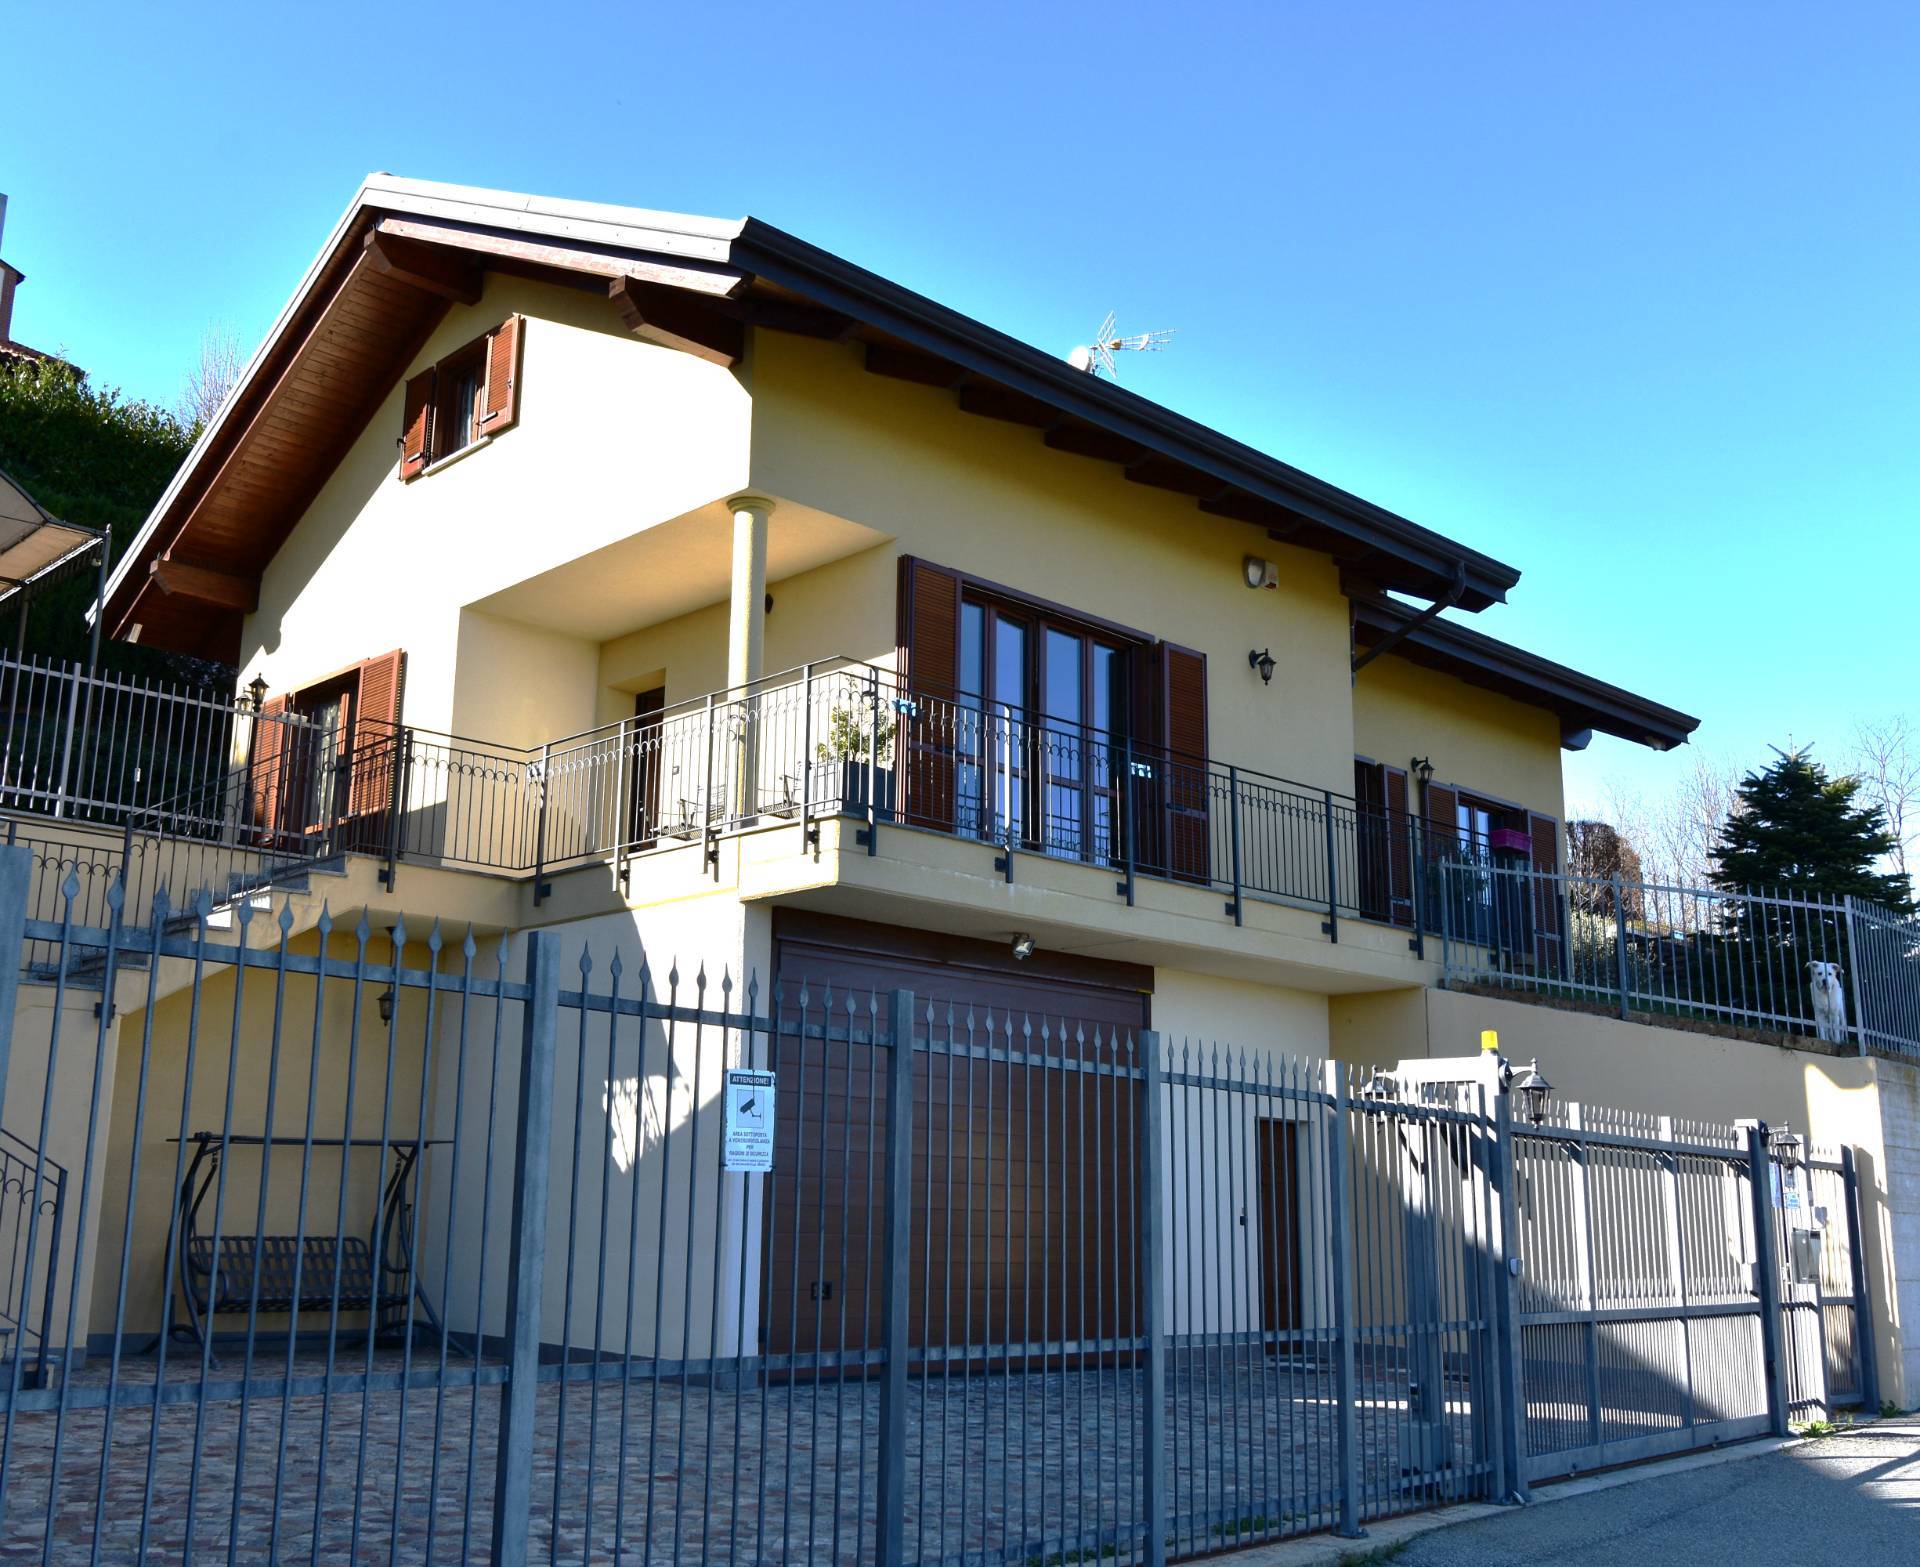 Villa Unifamiliare in Vendita a Pavarolo